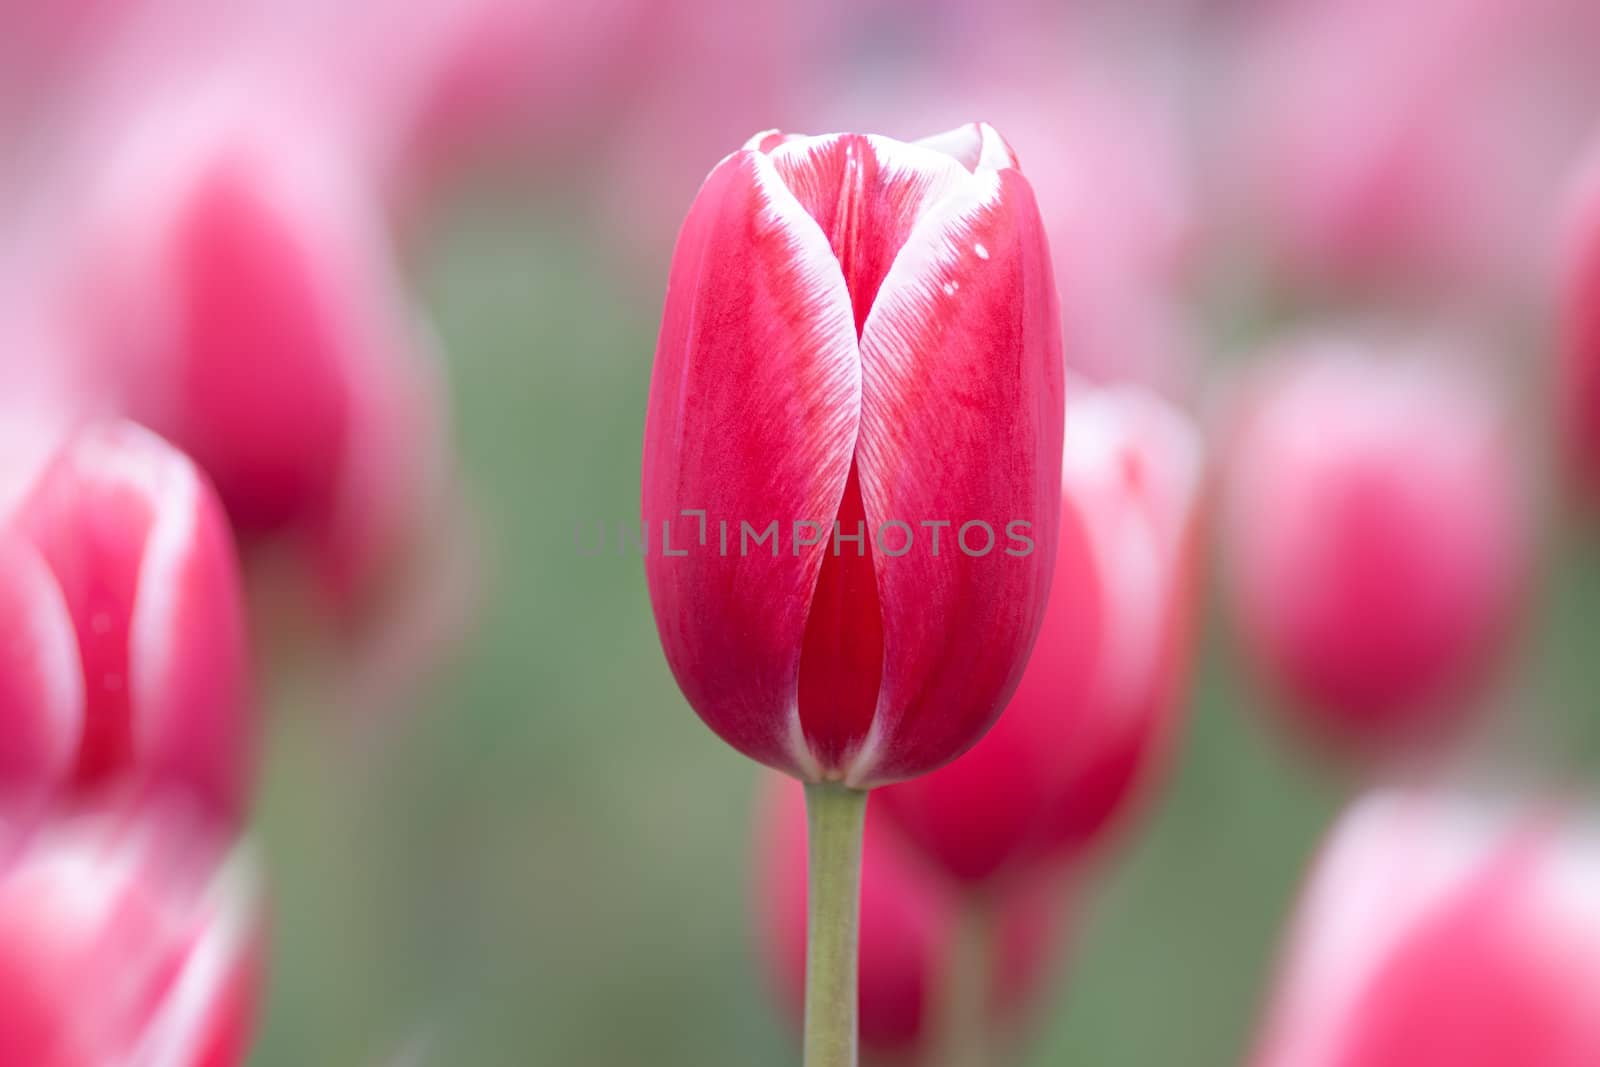 Pink tulips by palinchak